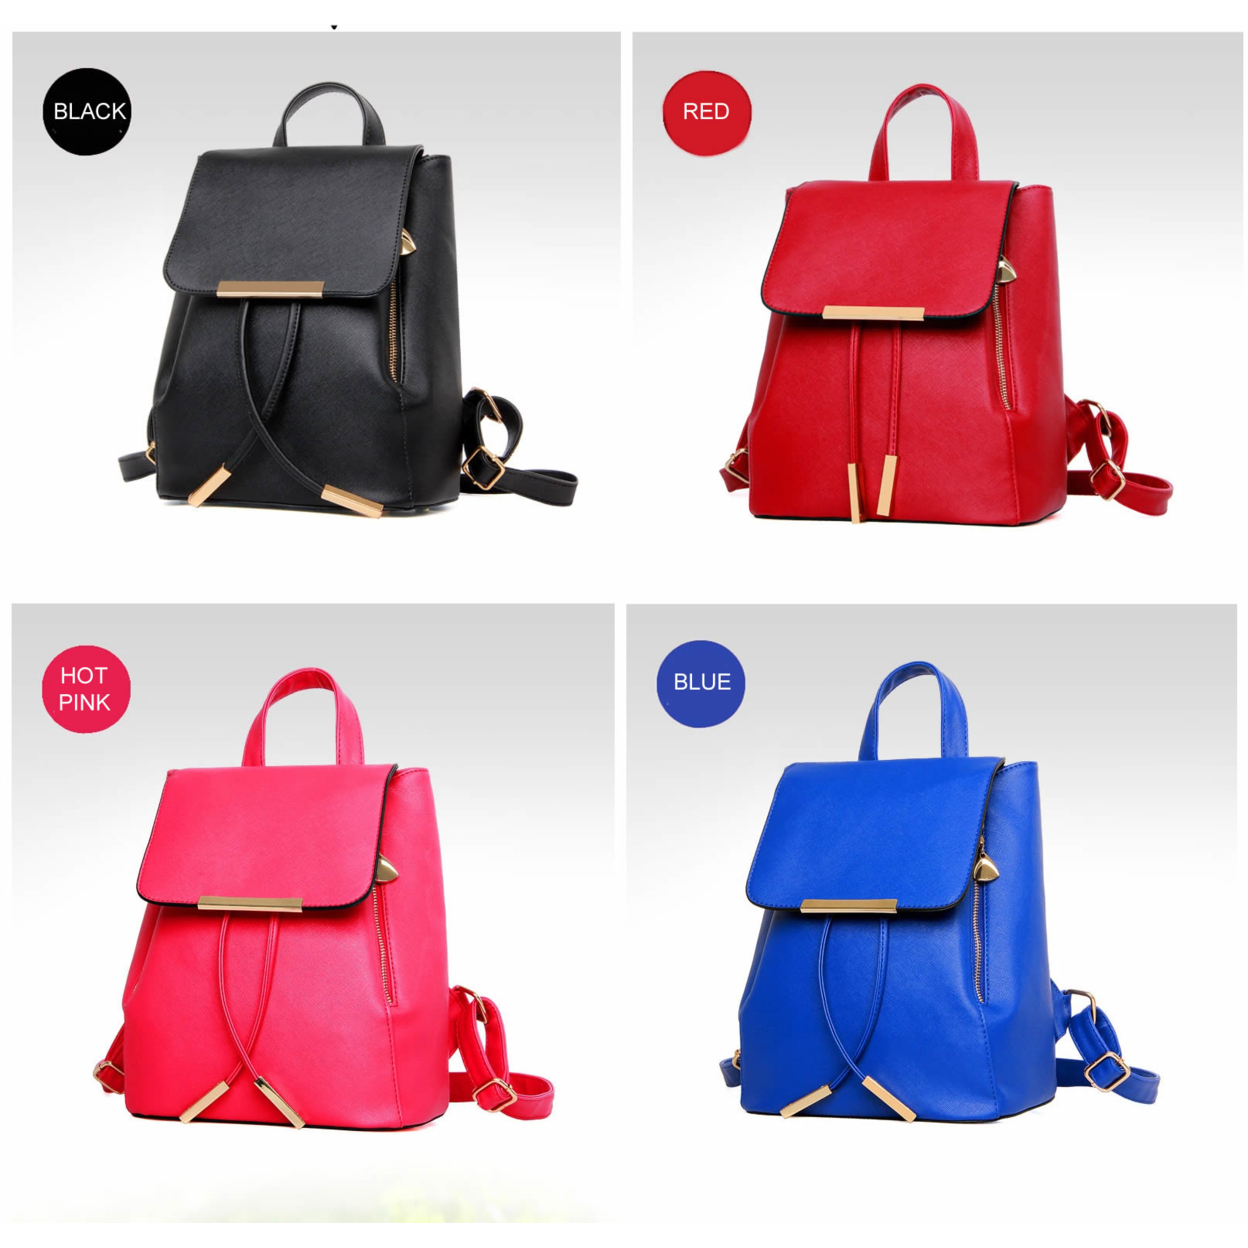 Katalina Classic Handbag Convertible To Backpack - image 1 of 5